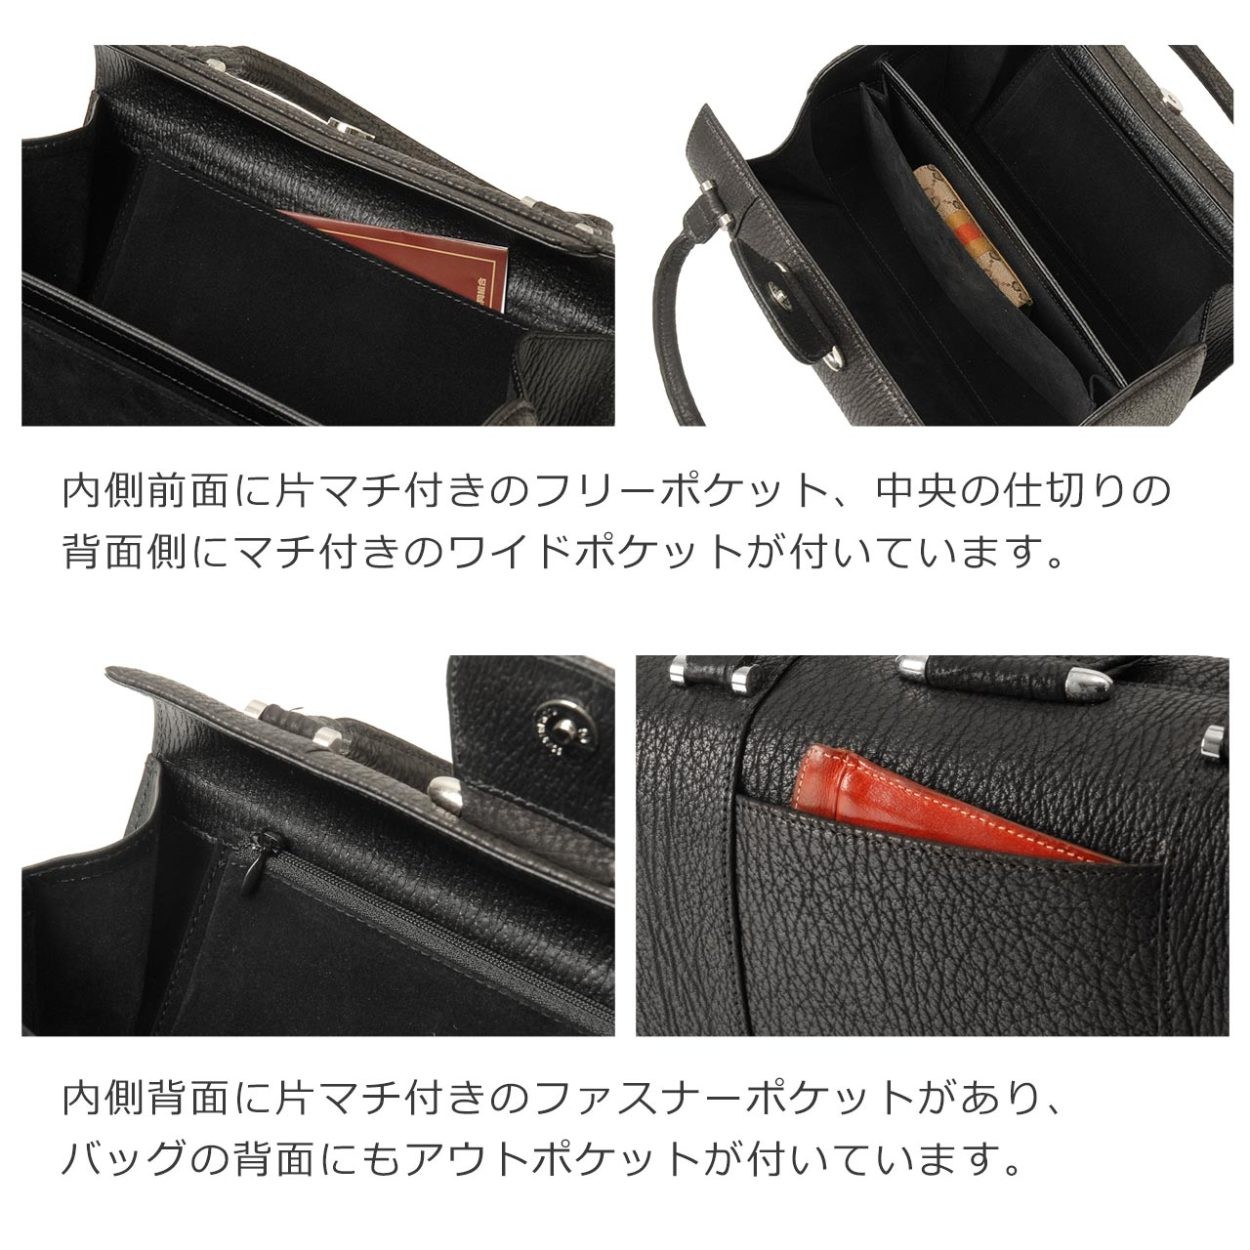 シャーク ブラック フォーマルバッグ レディース 日本製 本革 ボックス